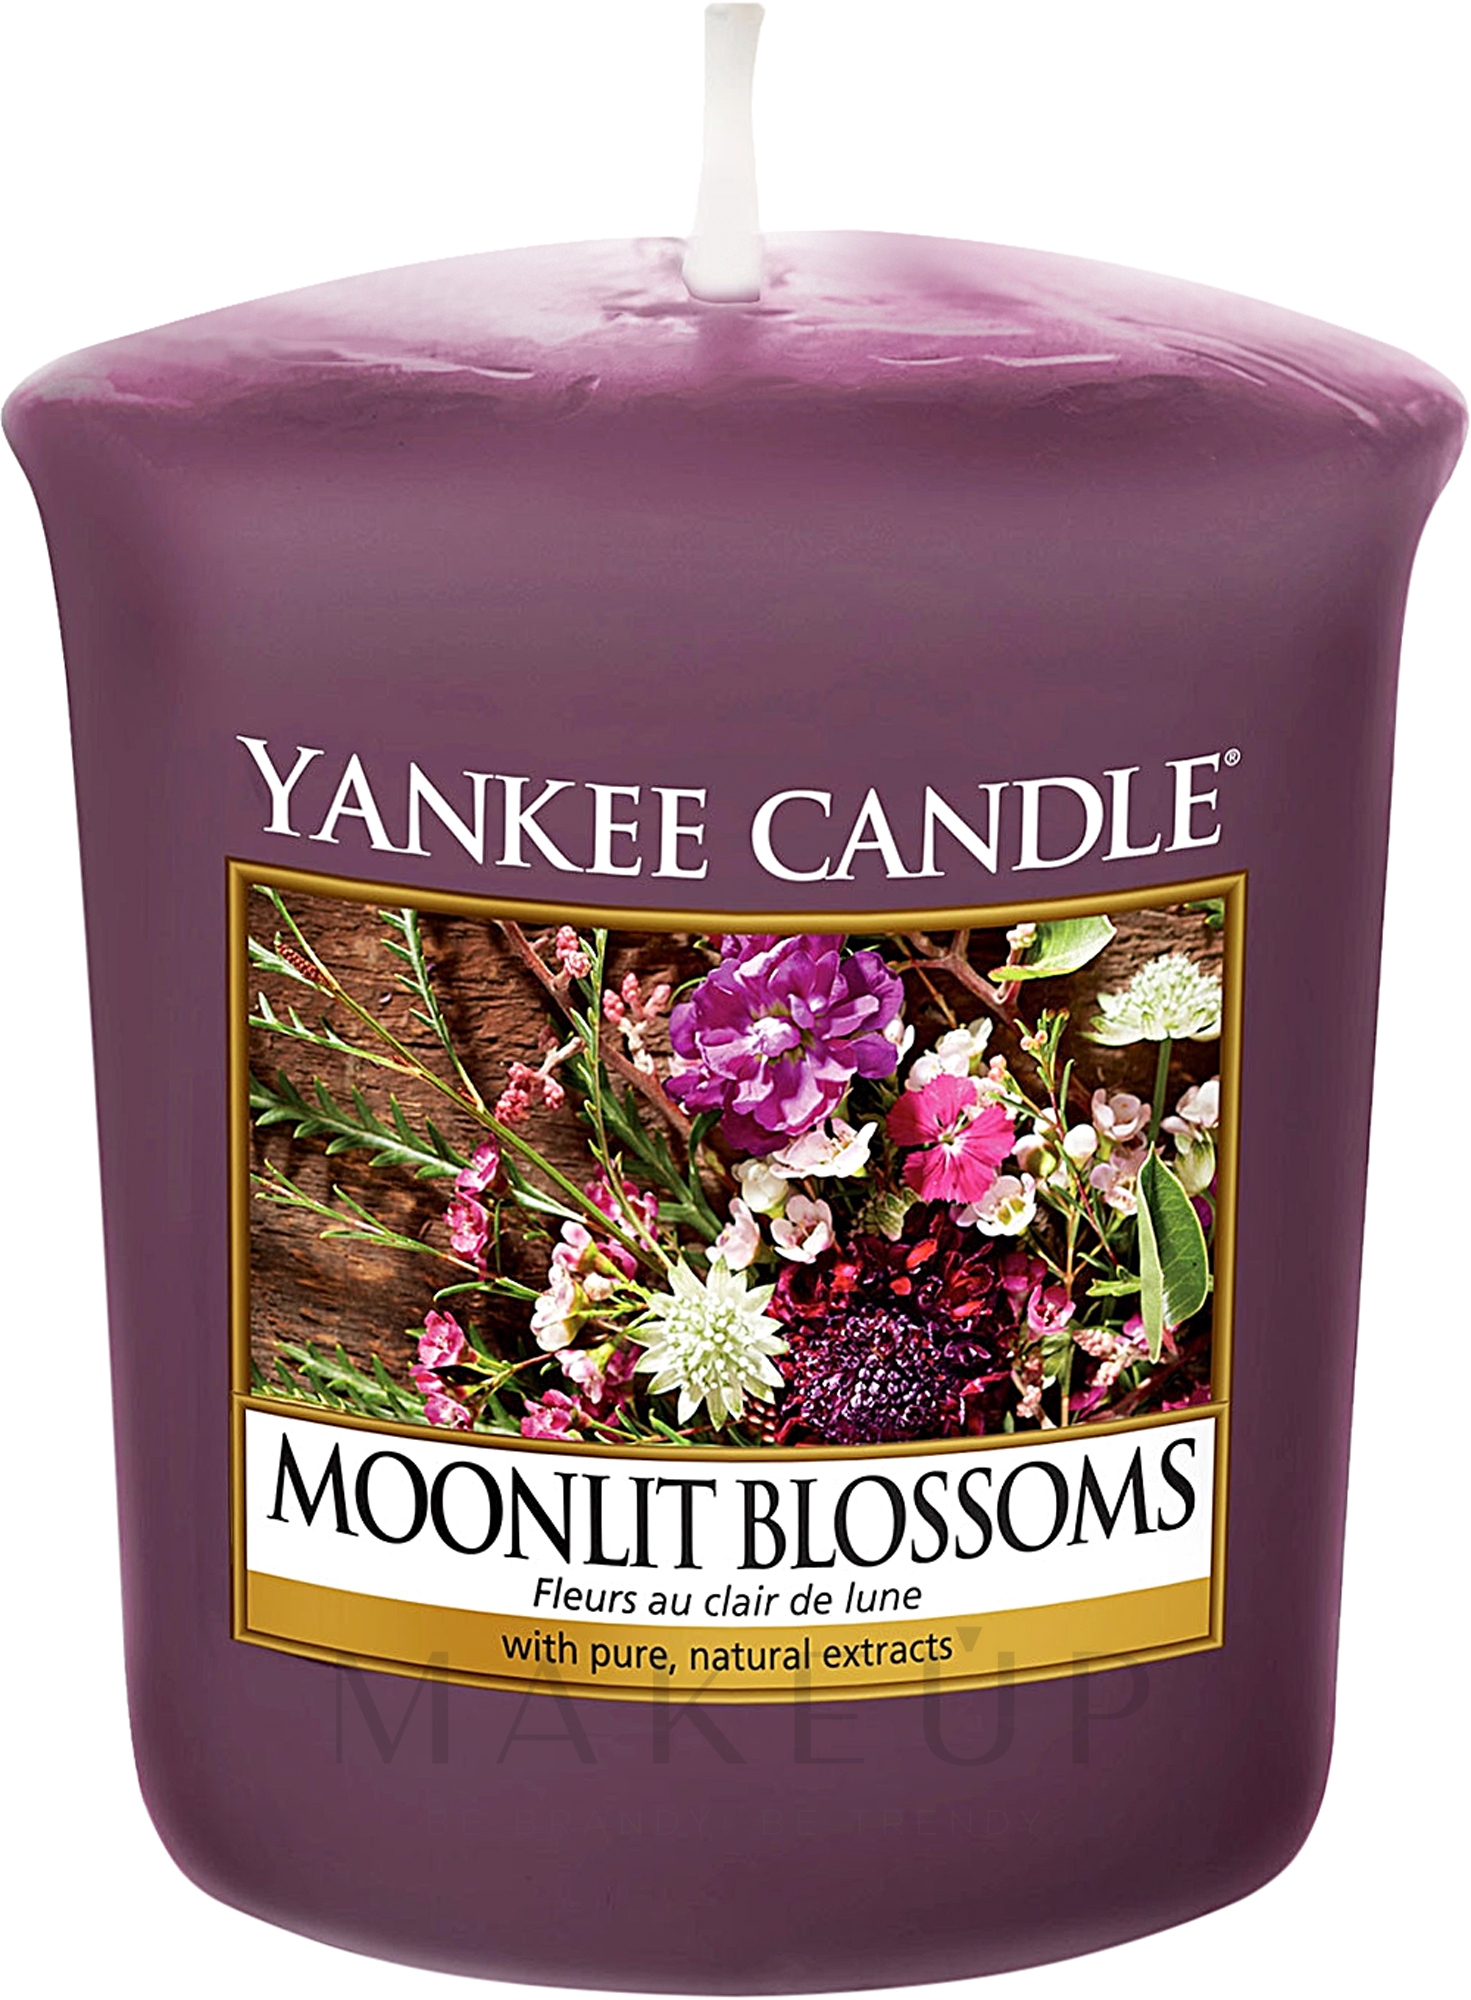 Votivkerze Moonlit Blossoms - Yankee Candle Moonlit Blossoms Sampler Votive — Foto 49 g